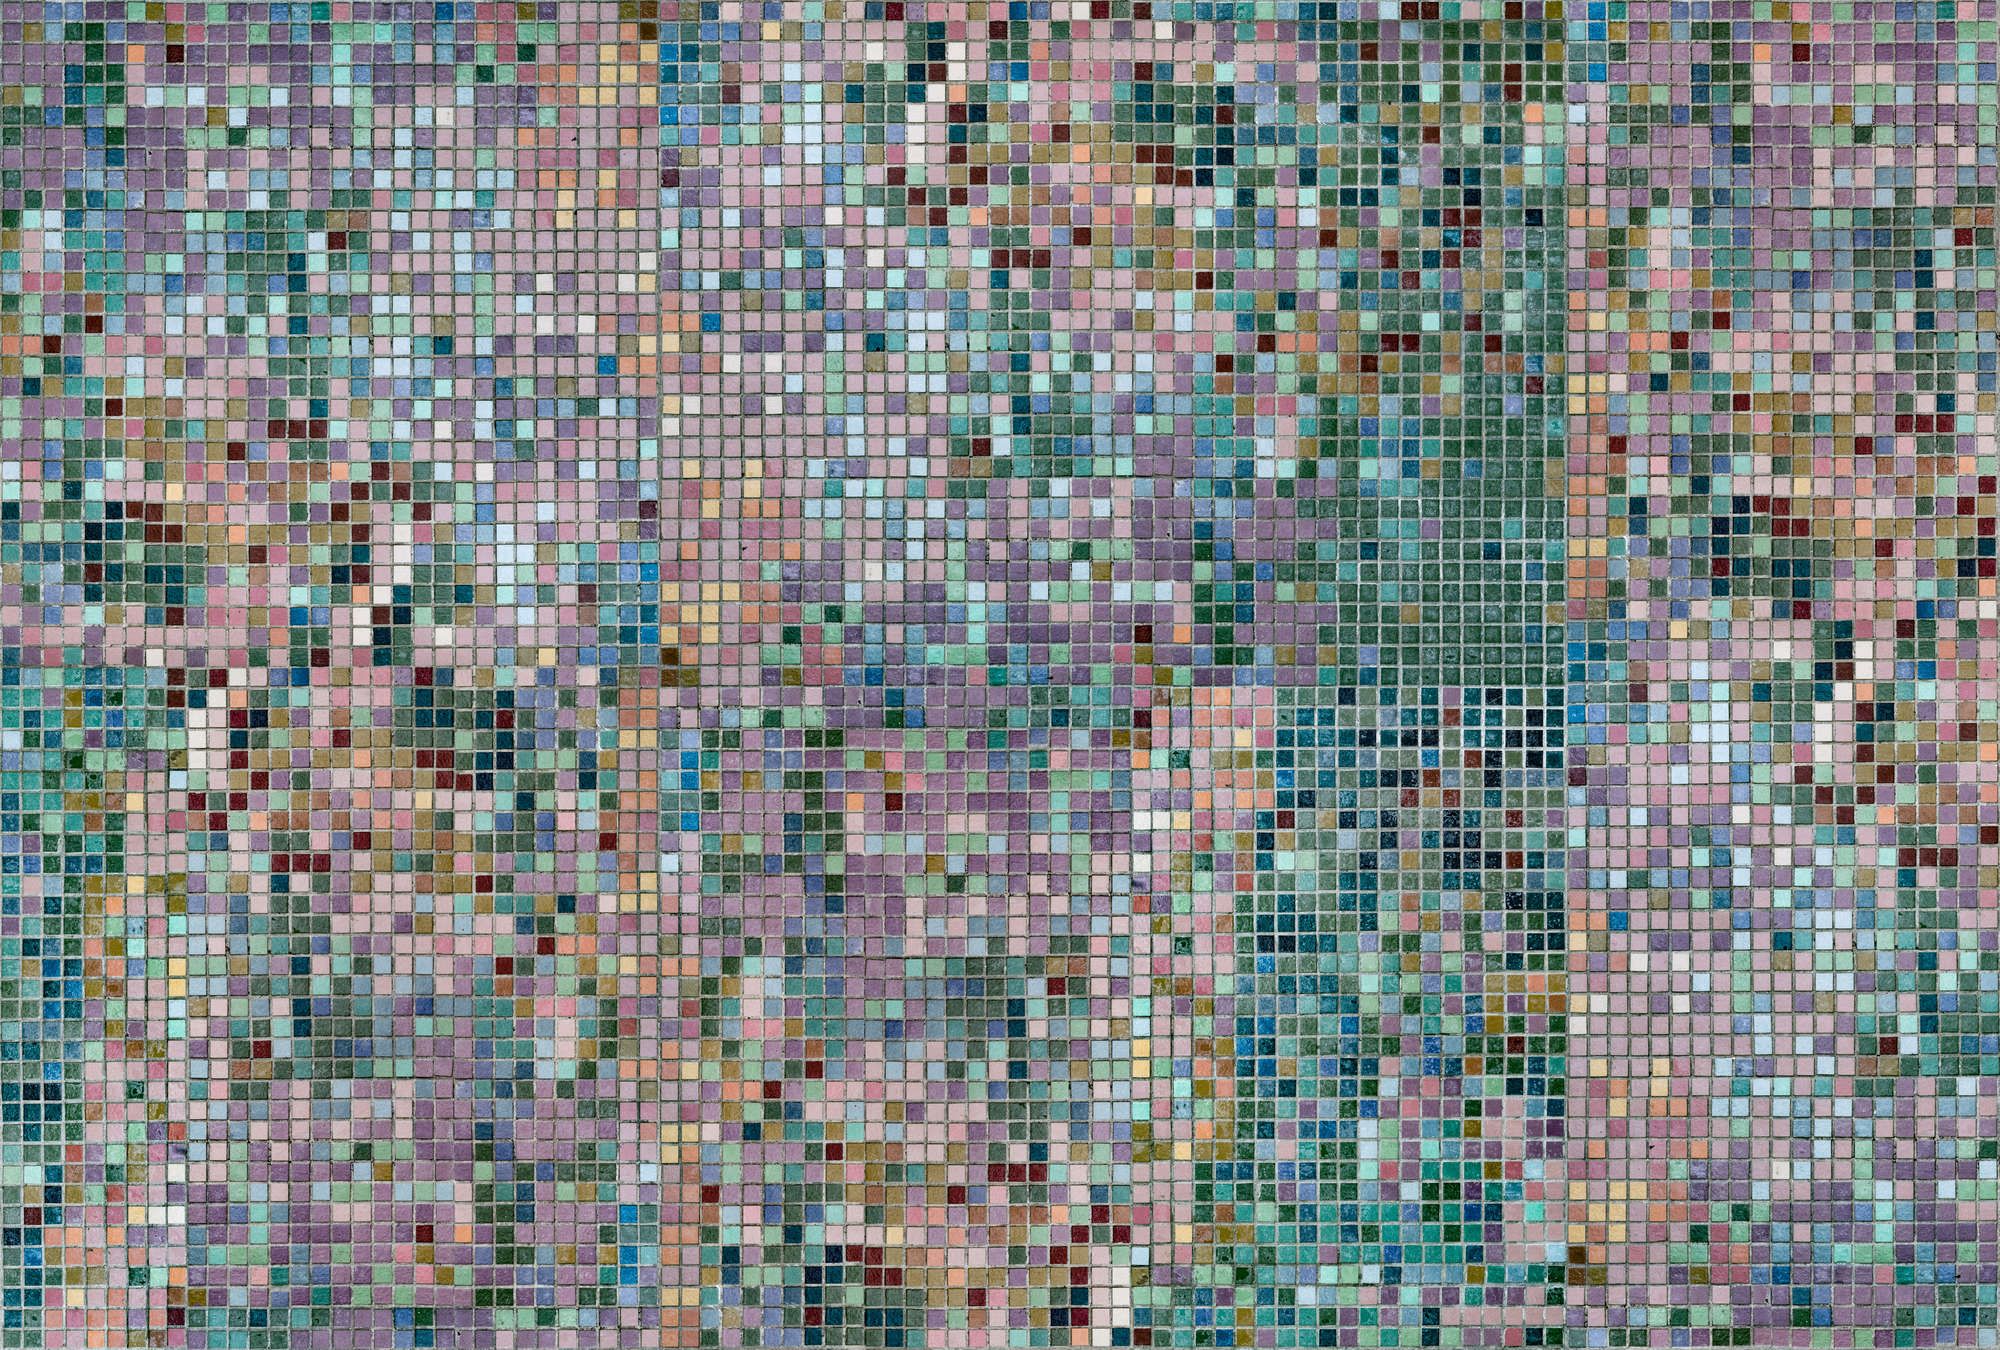             papier peint en papier panoramique »grand central« - motif de mosaïque dans des couleurs vives - intissé mat et lisse
        